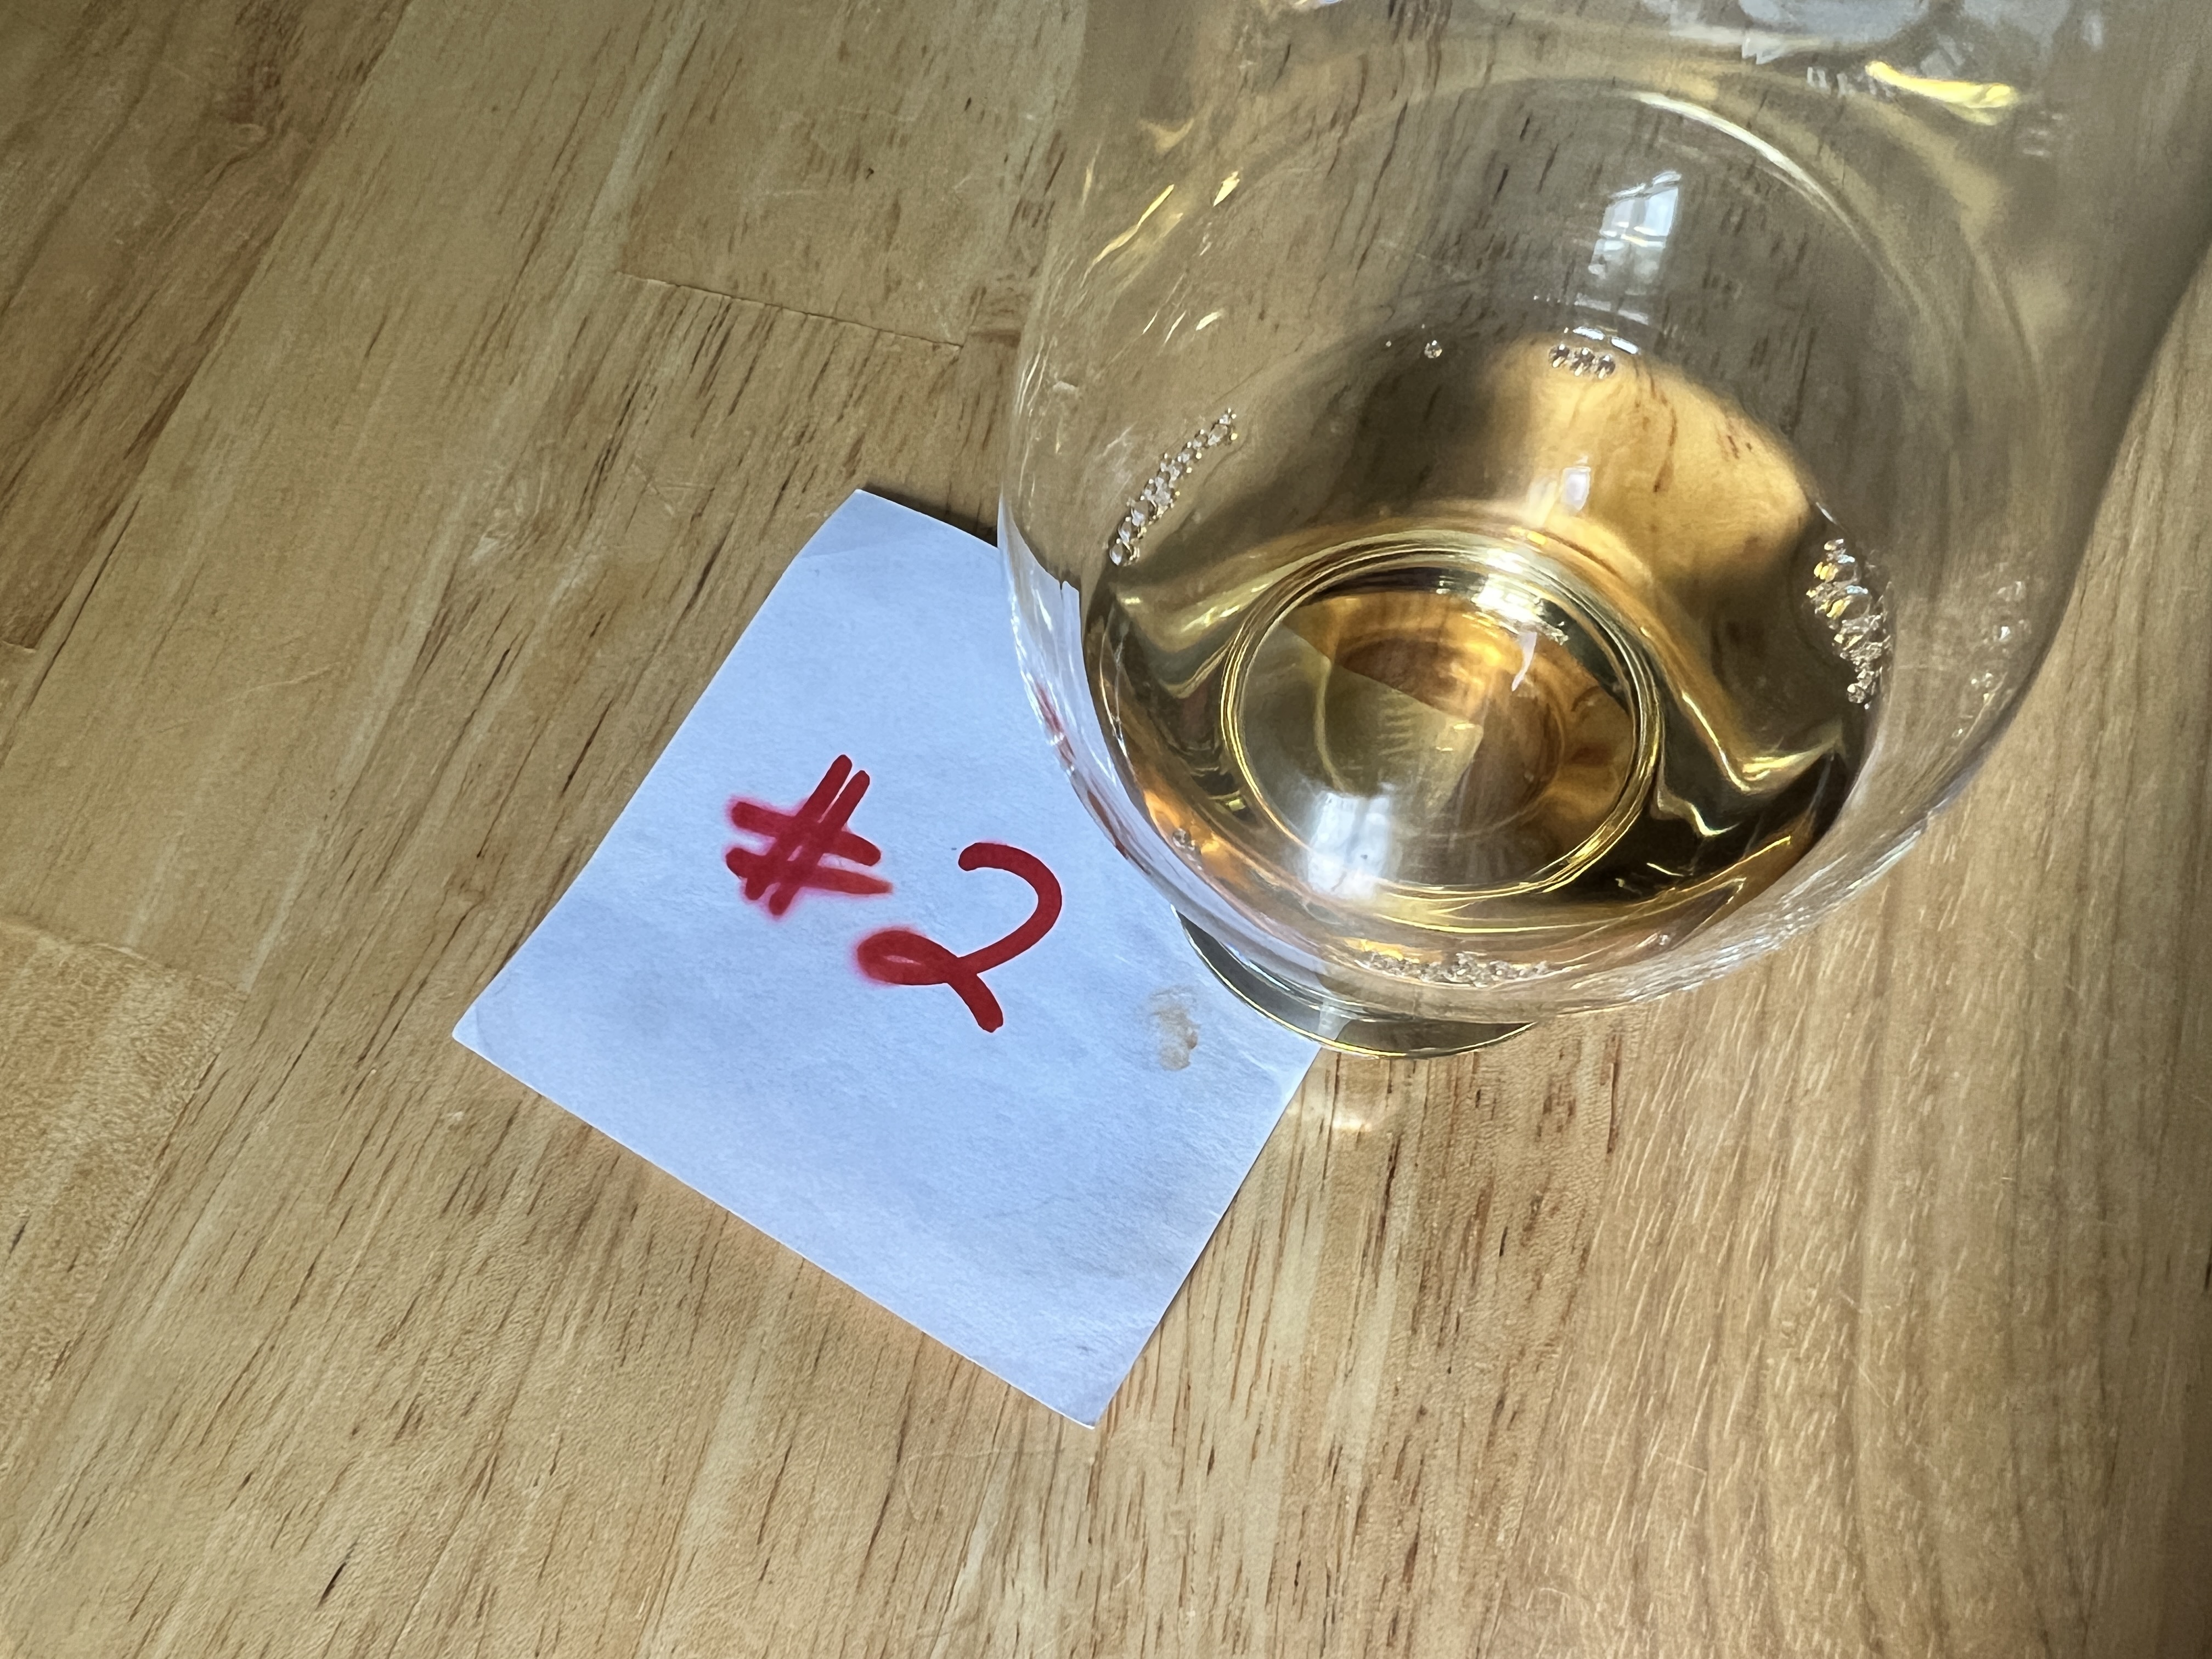 Single Malt Scotch Whisky Under $100